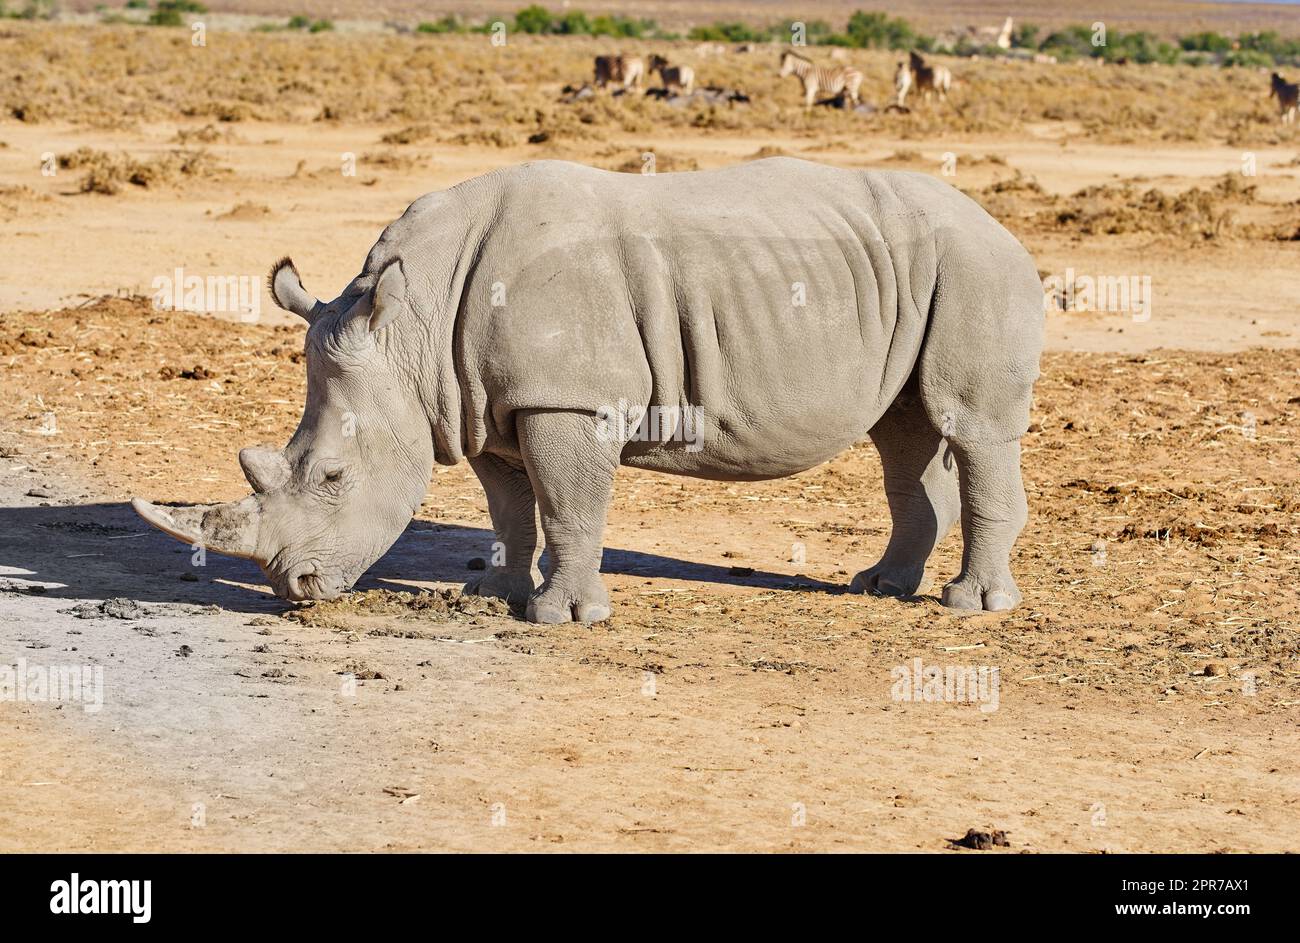 Un rinoceronte che pascolava su un campo di bruno asciutto durante un safari in Sudafrica. Animali di grandi dimensioni che si nutrono in un habitat selvaggio con carie diverse specie di mammiferi sullo sfondo in natura Foto Stock